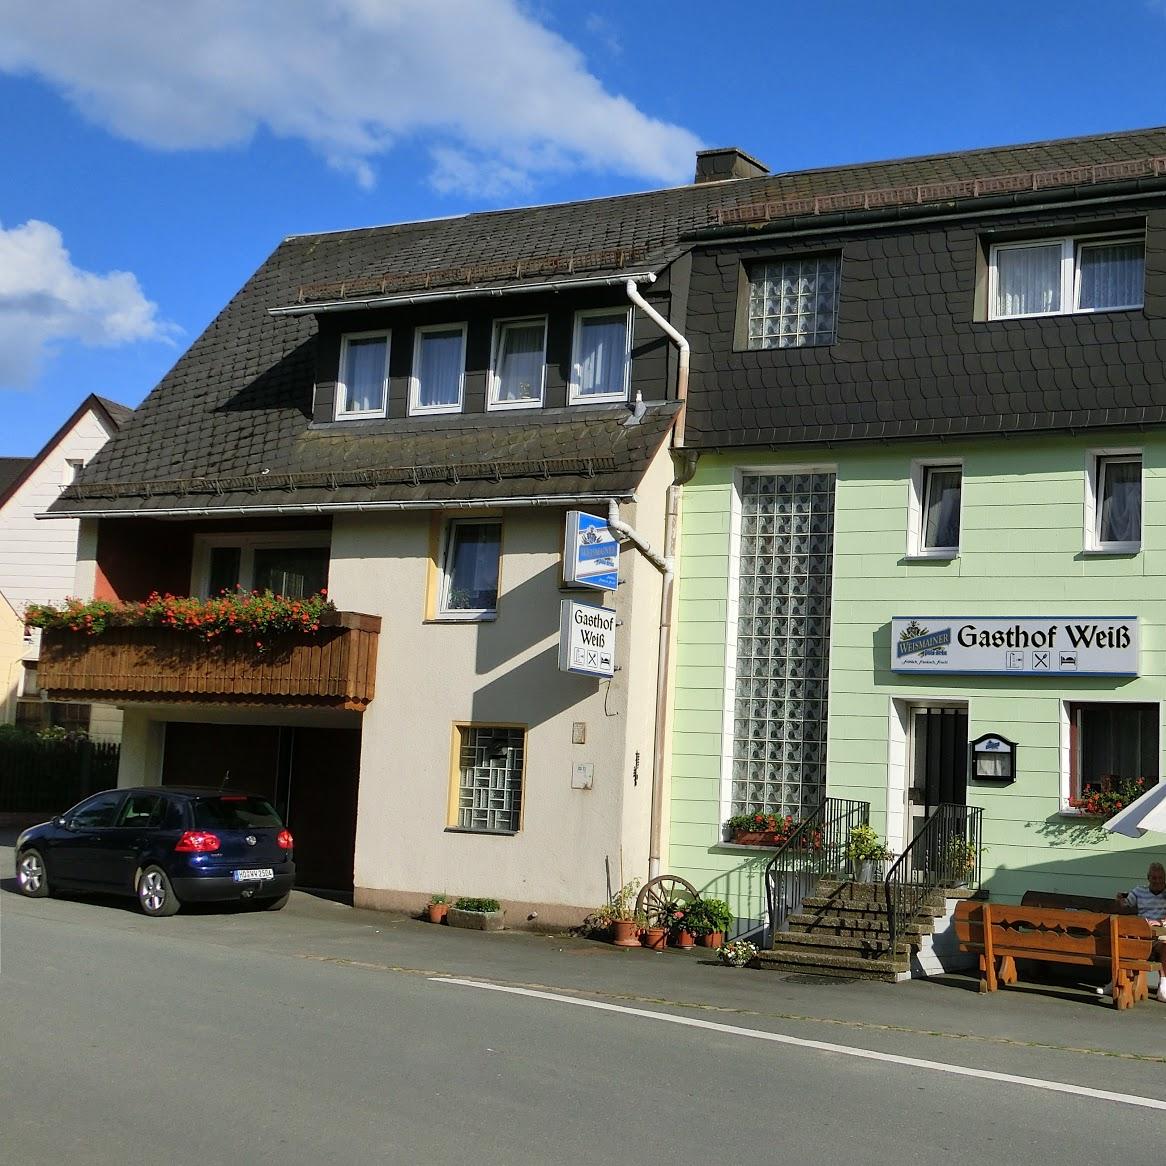 Restaurant "Gasthof-Pension Weiß" in Selbitz